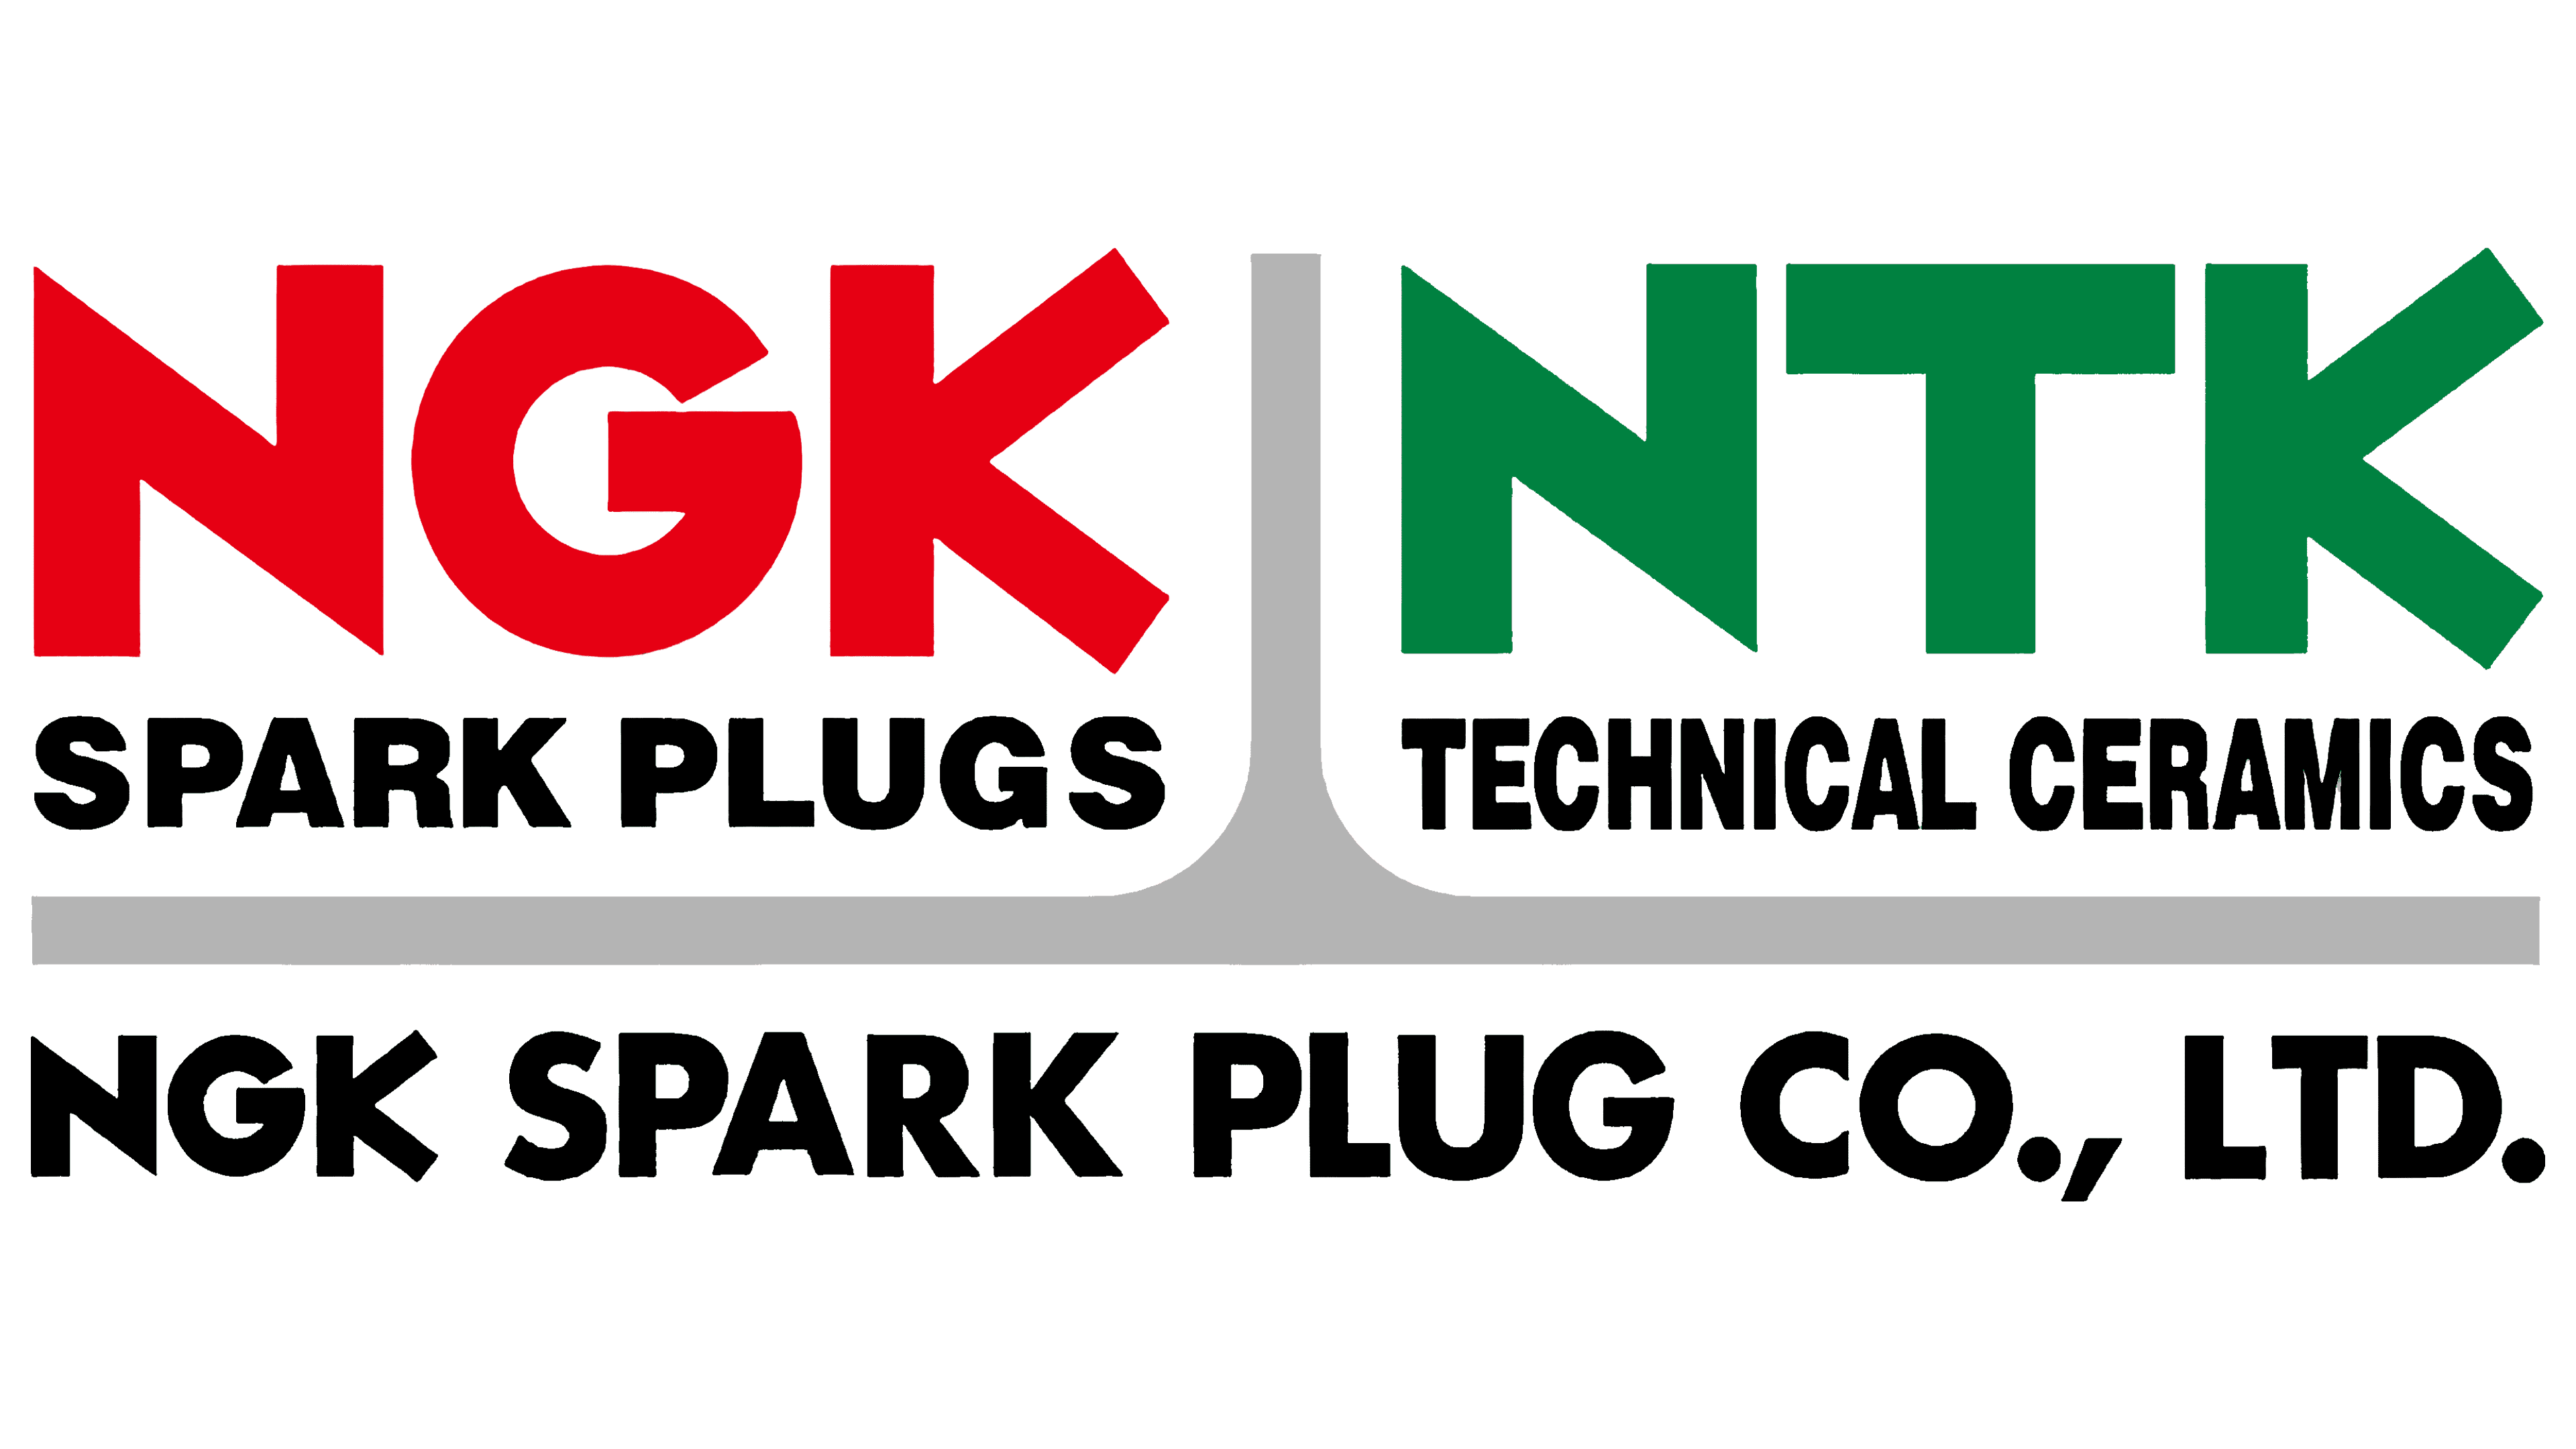 NGK  : NGK Spark Plugs est un fabricant renommé de bougies d’allumage, de céramiques et de capteurs basé à Nagoya, au Japon.